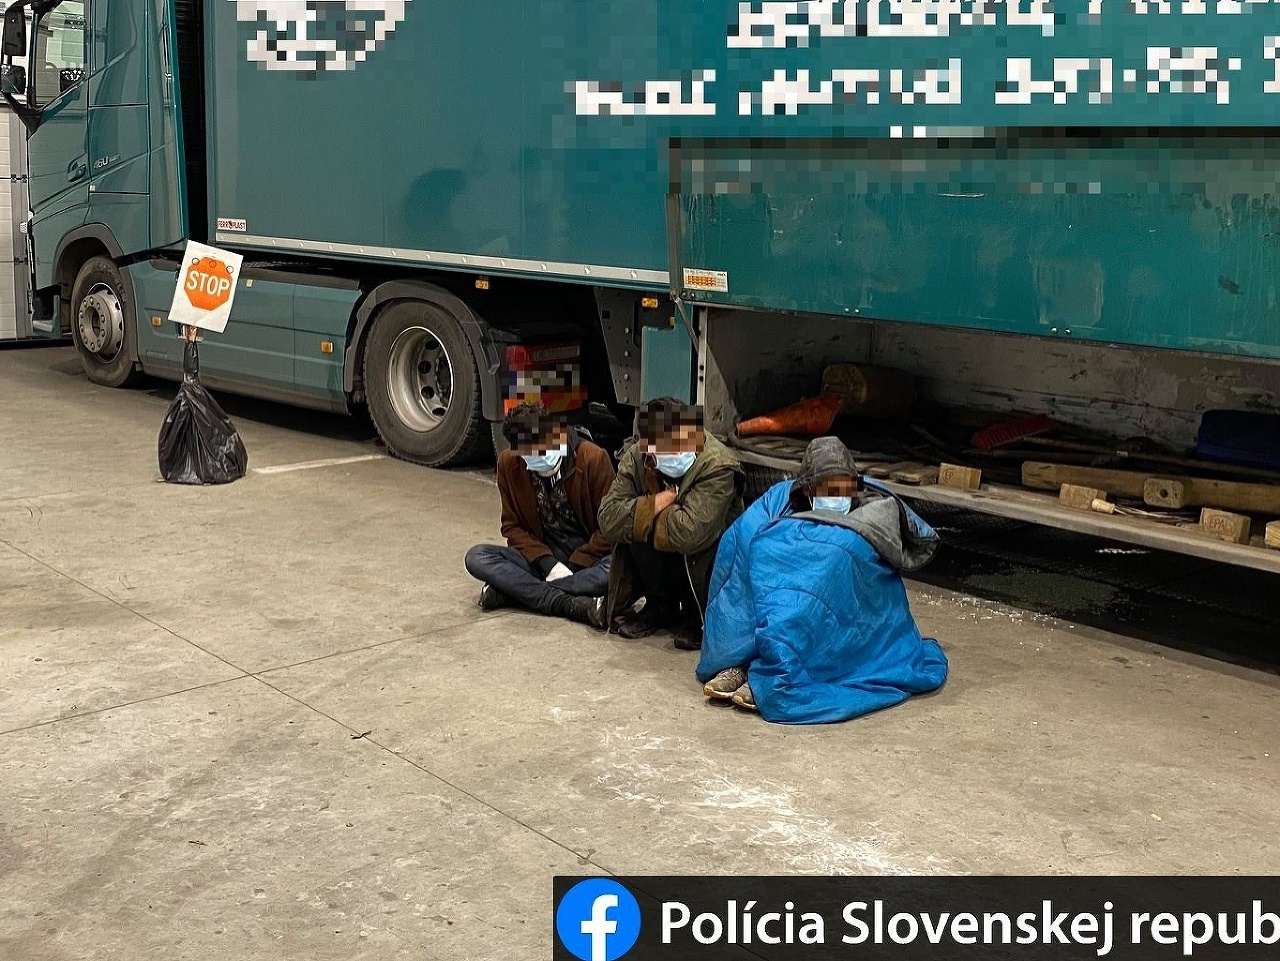  Vo Vyšnom Nemeckom odhalila polícia pod kamiónmi piatich migrantov